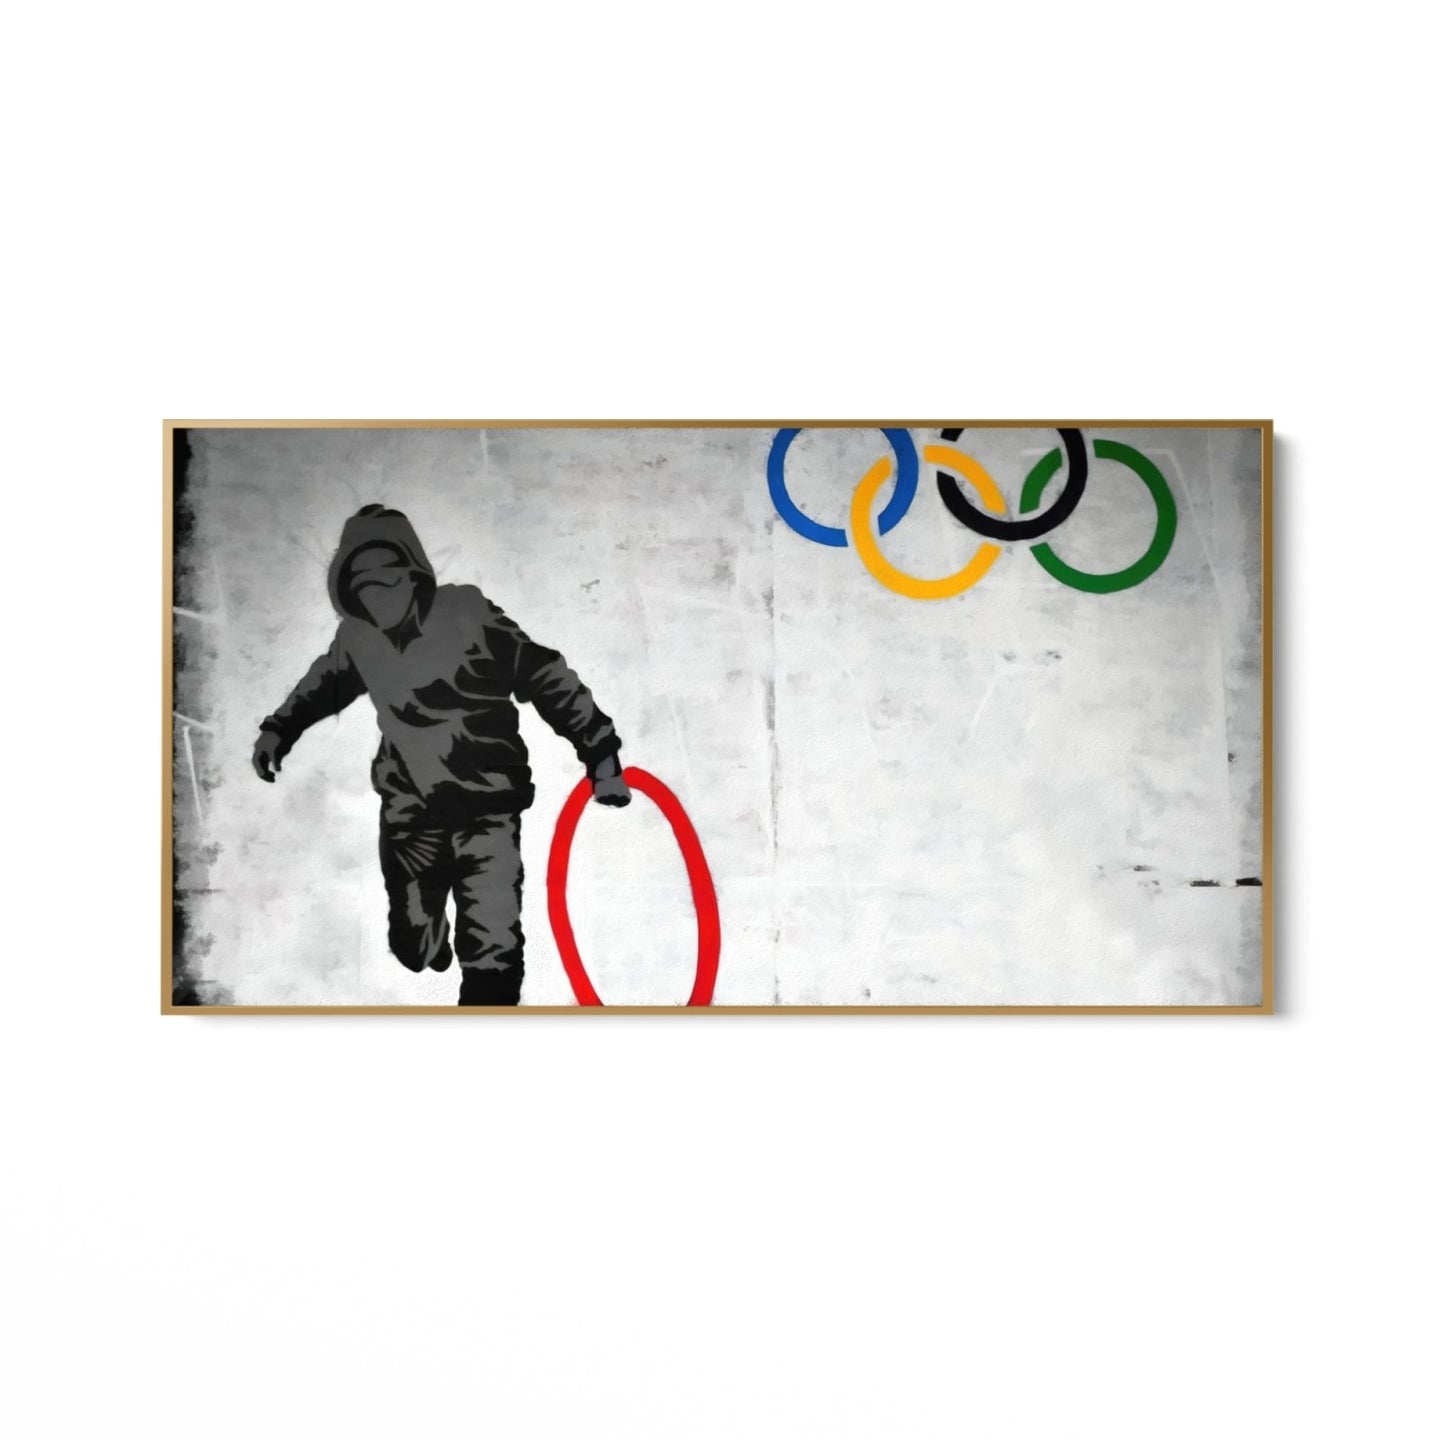 Olimpiai gyűrűk fosztogatója, Banksy